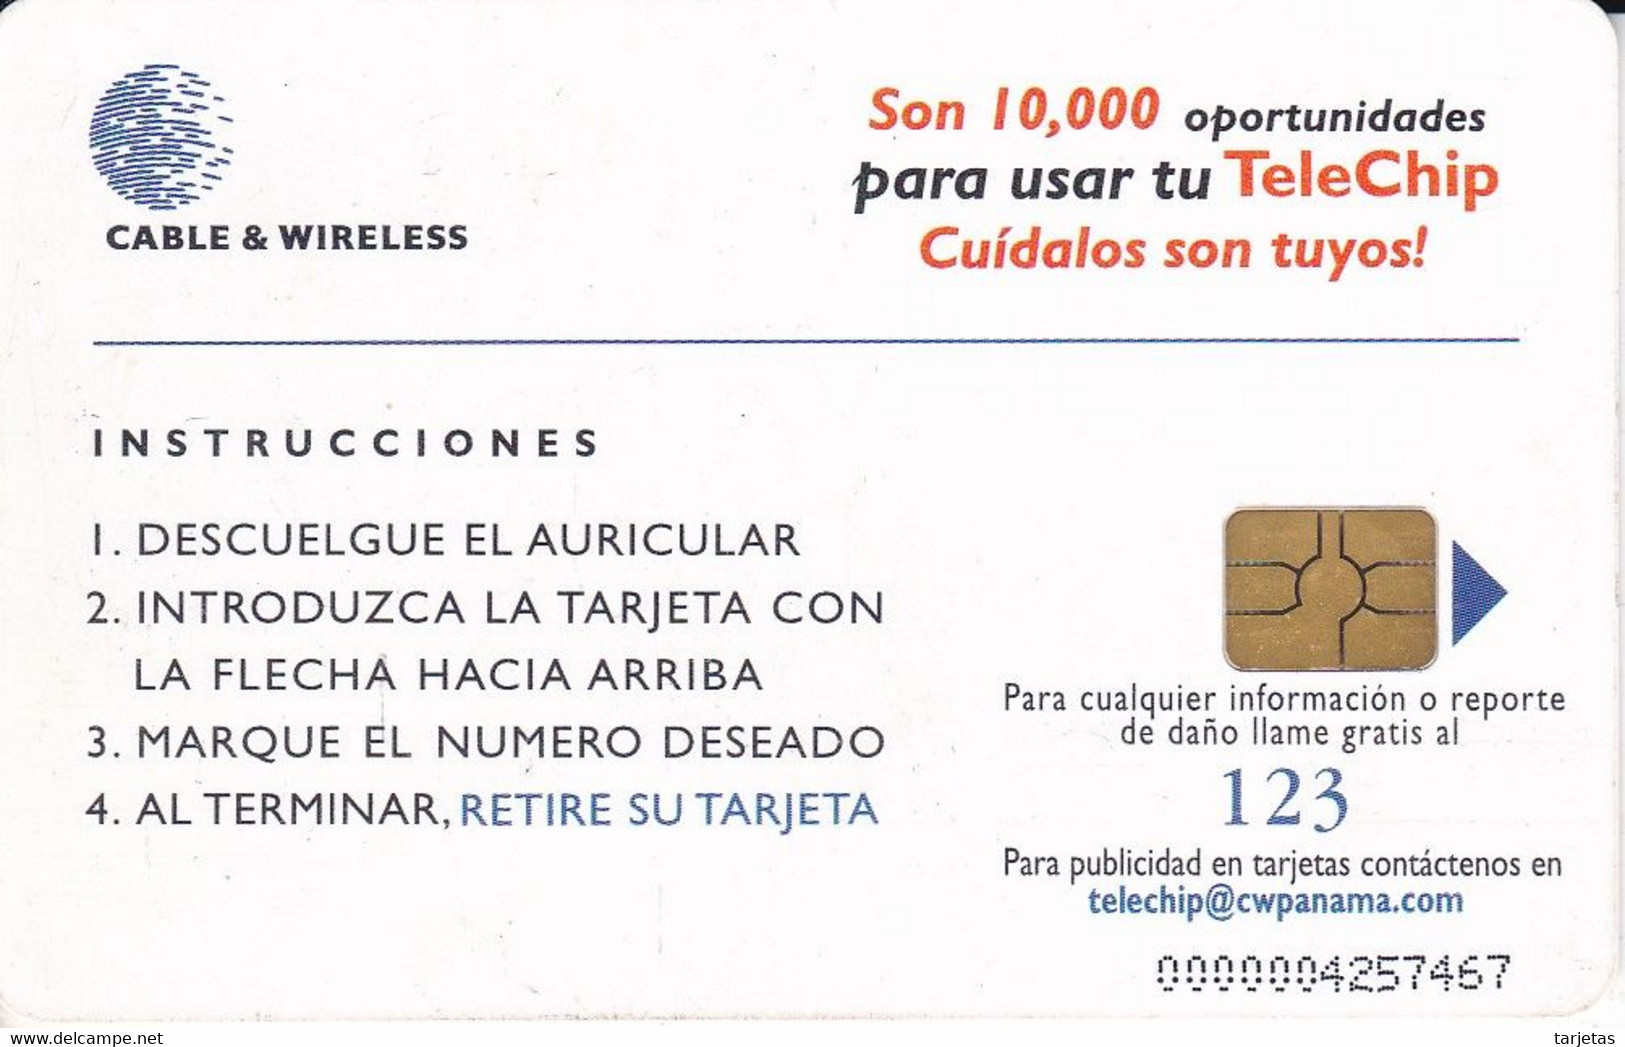 TARJETA DE PANAMA DE CABLE & WIRELESS DE B/3.00  10 MIL TELEFONOS PUBLICOS - Panama